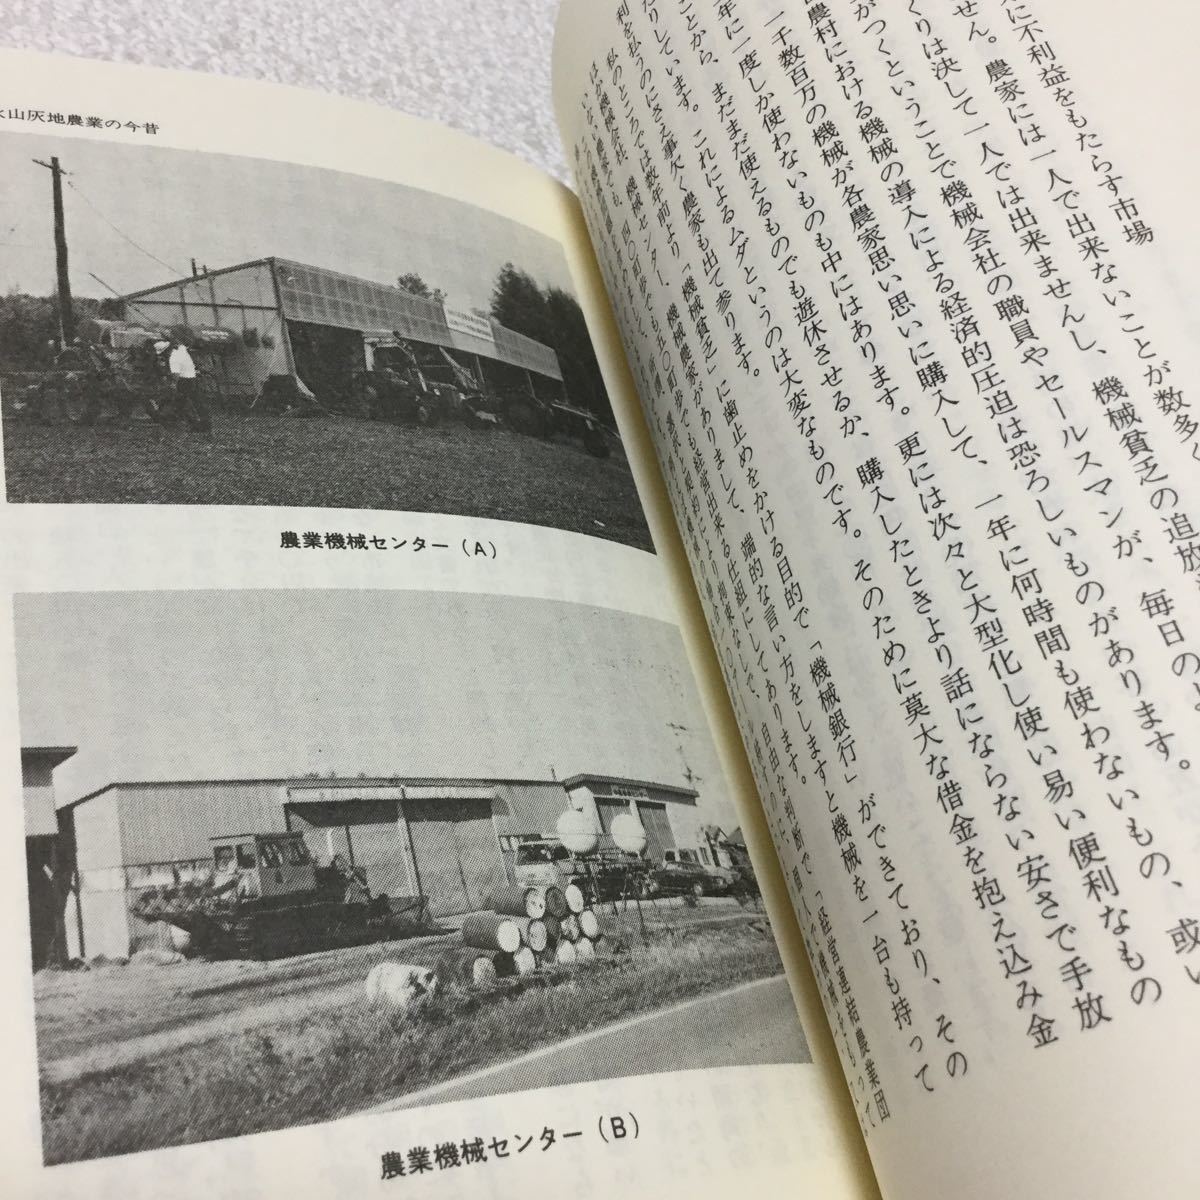 37 北海道の農業と農民 北海道文化論 札幌学院大学 農業 1986年3月30日発行 農業 農作 開拓 畑作 本 農作物 日本 _画像6